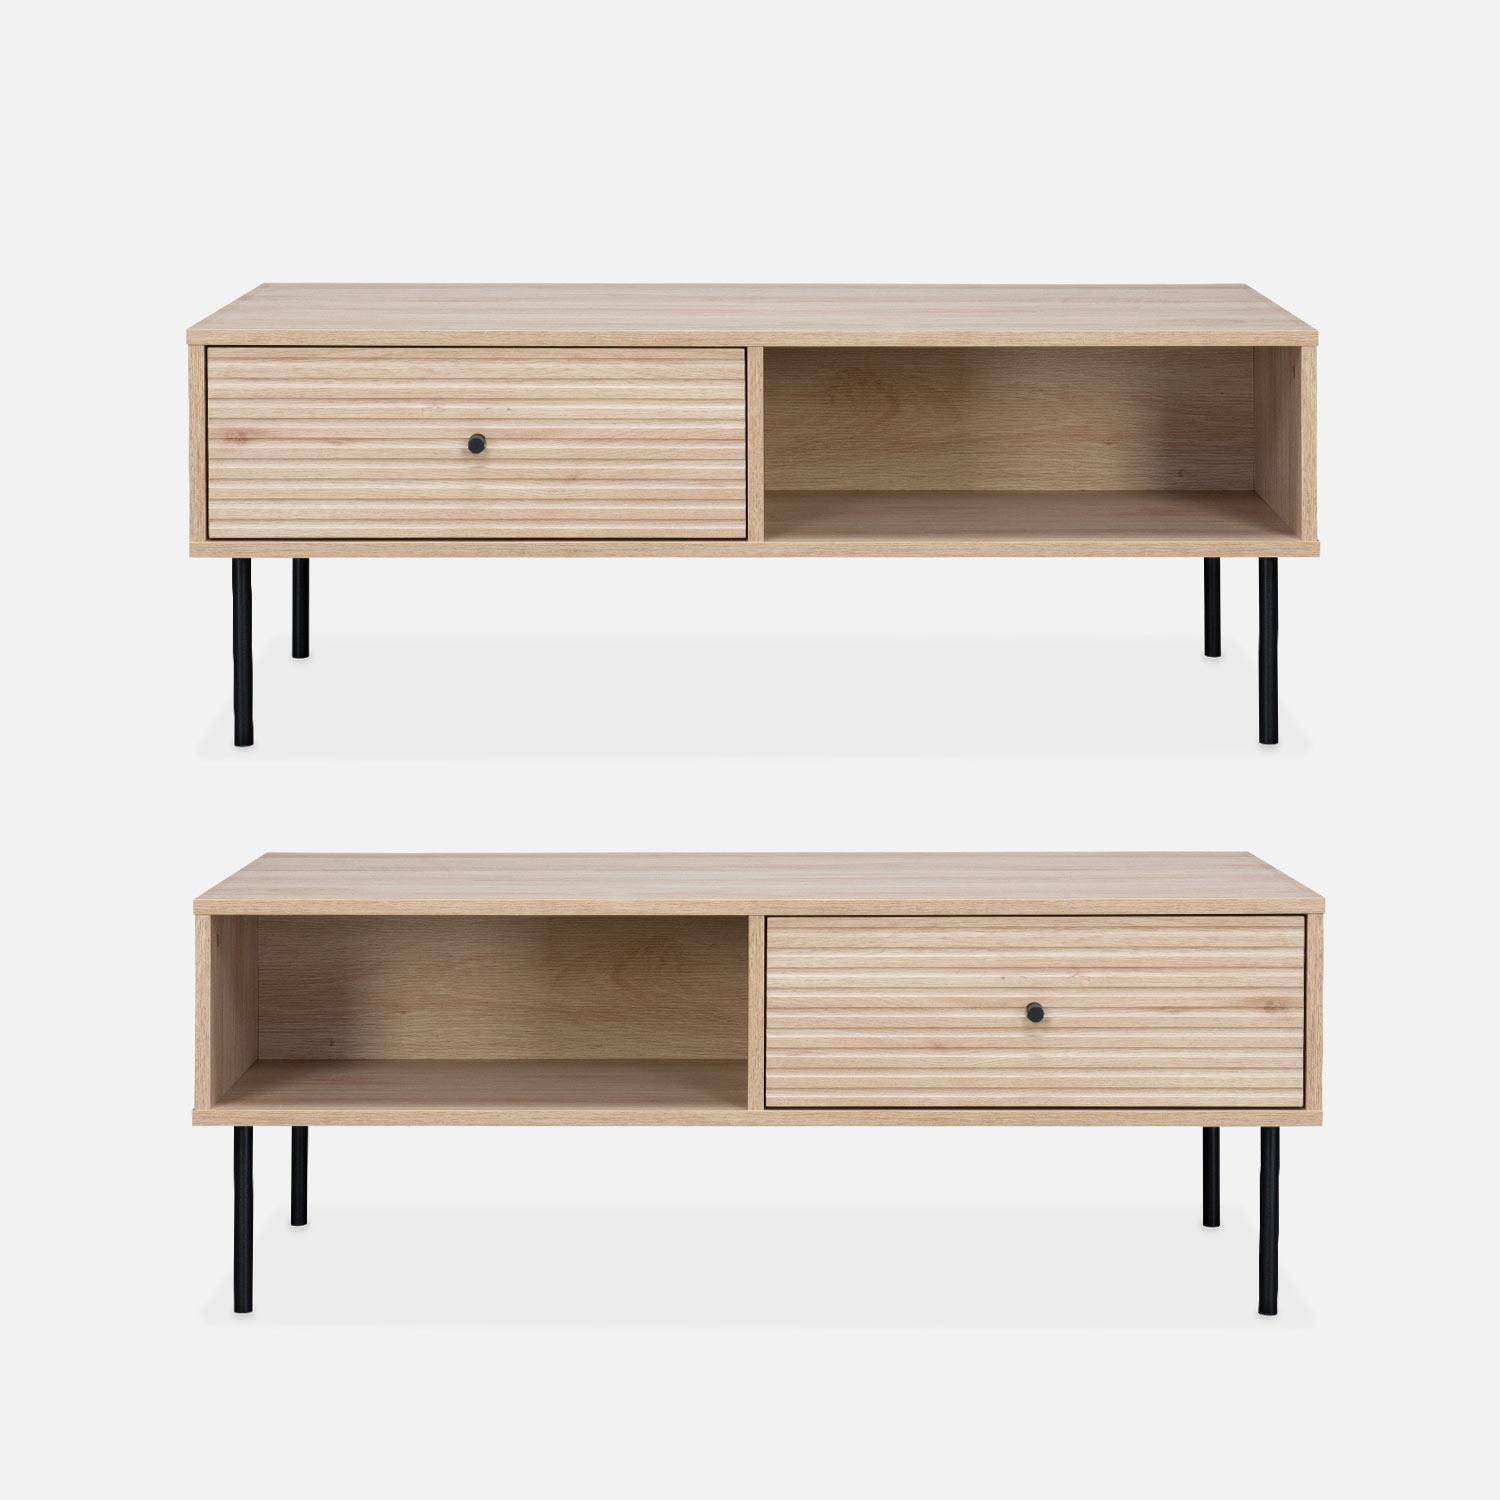 Table basse, Braga, un tiroir, deux espaces de rangement, L 110 x l 59 x H 41cm Photo2